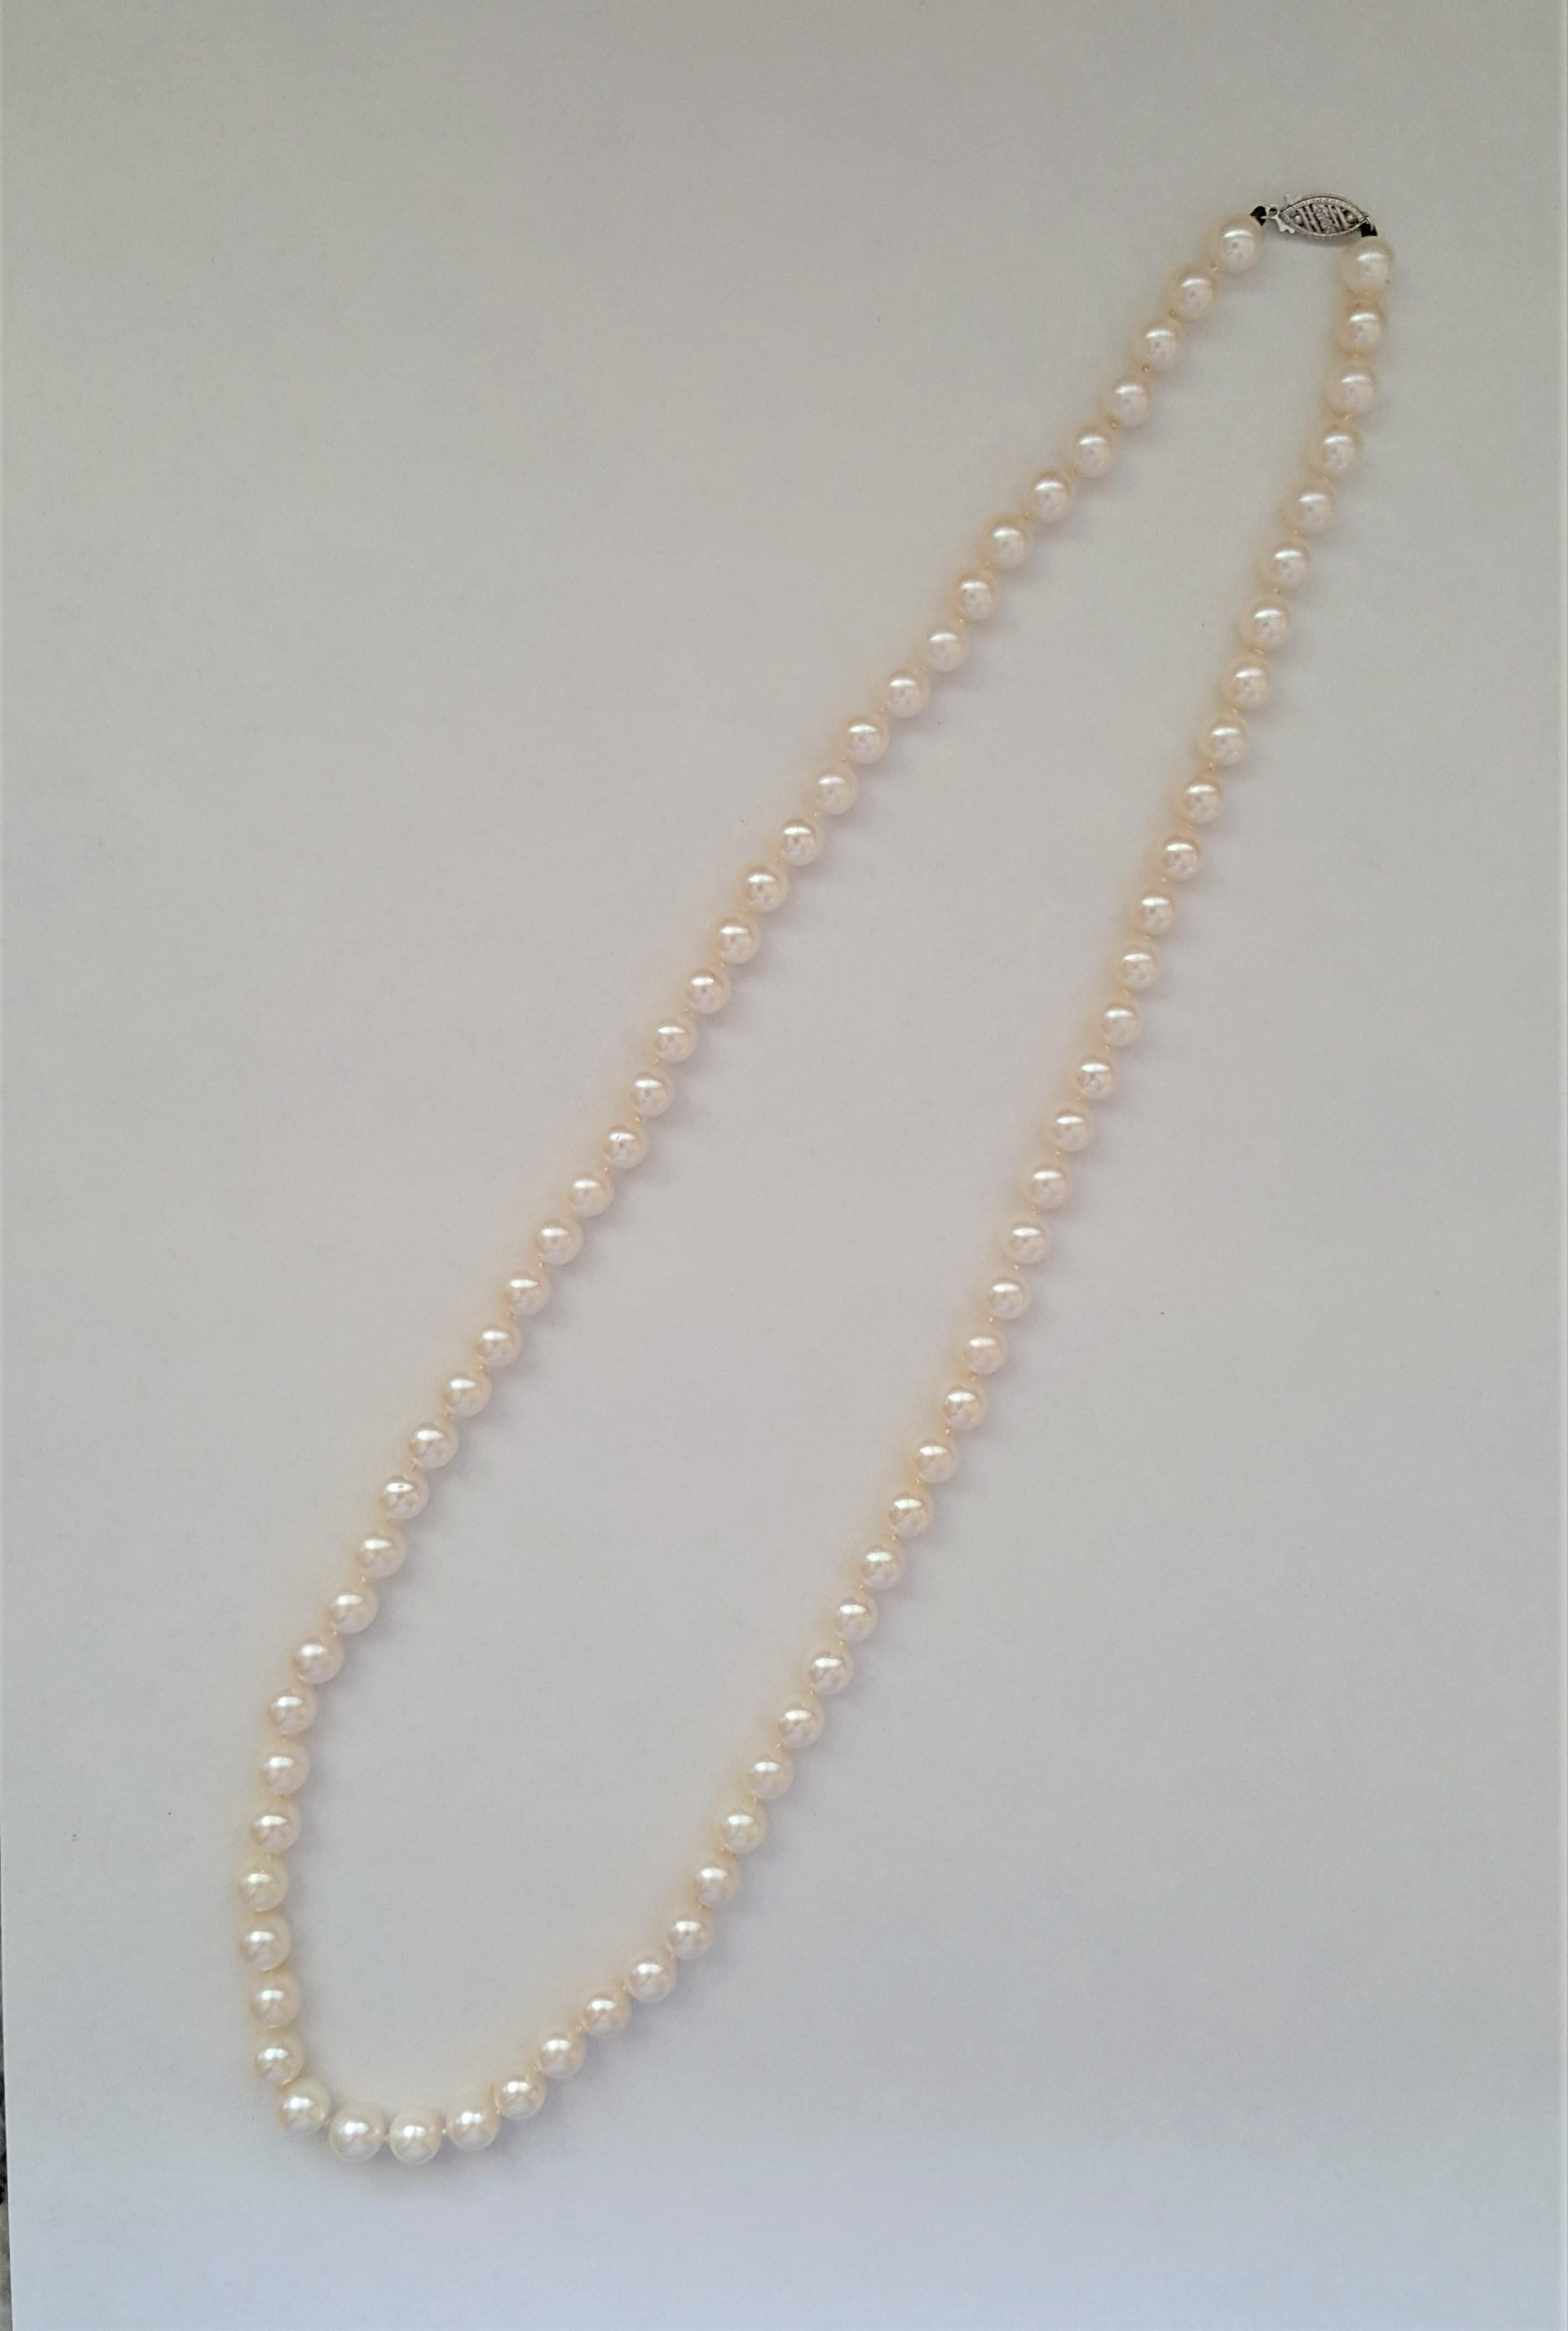 Ein wunderschöner Strang mit weißen Zuchtperlen der Güteklasse AA mit einem Durchmesser von 7 mm und einer Länge von 23 Zoll. Die Perlen sind in sehr gutem Zustand; das Perlmutt ist glänzend und sauber. Die Perlen sind mit einer Schließe aus